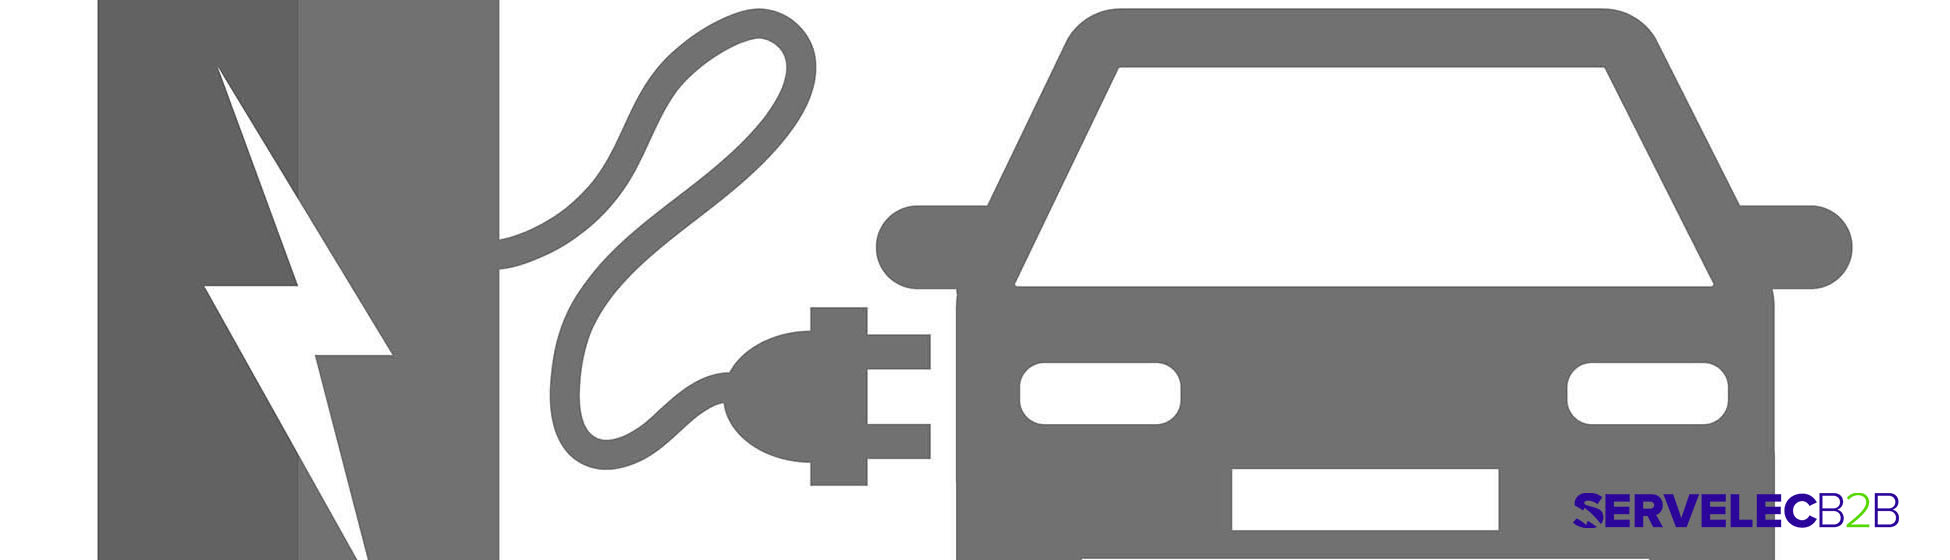 Installation borne de recharge véhicule électrique entreprise